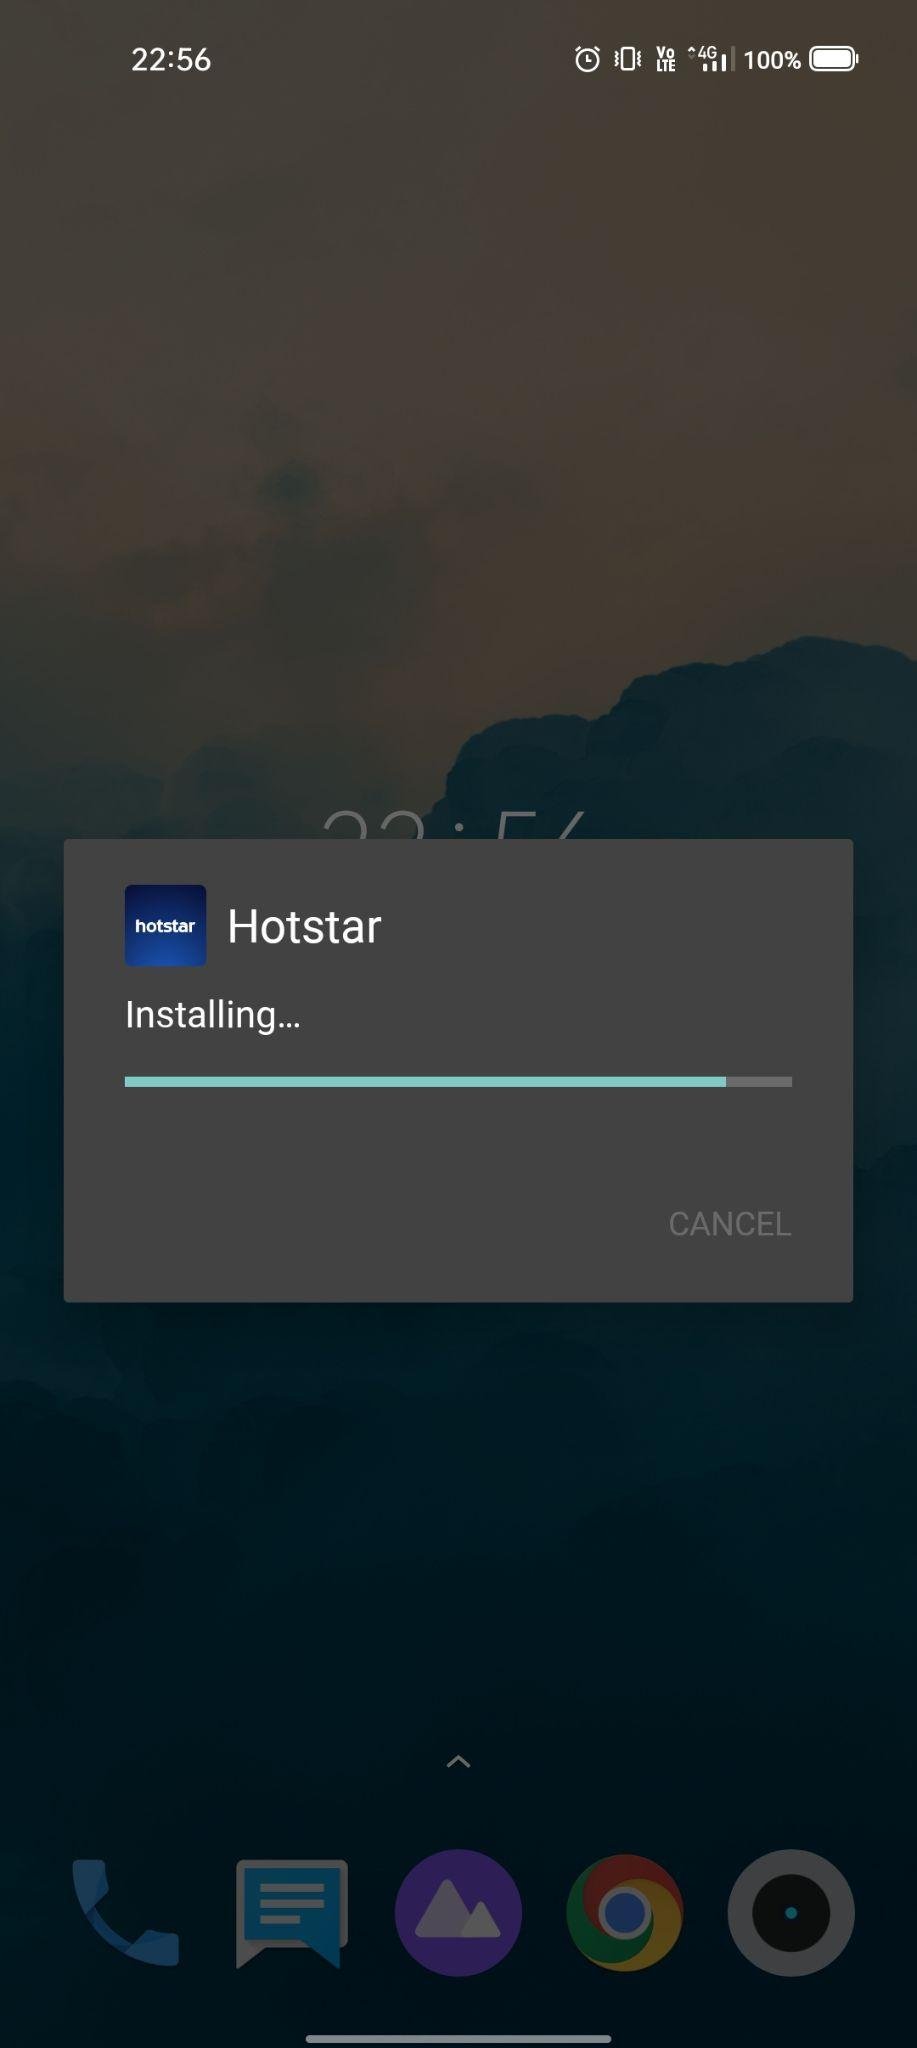 hotstar apk installing